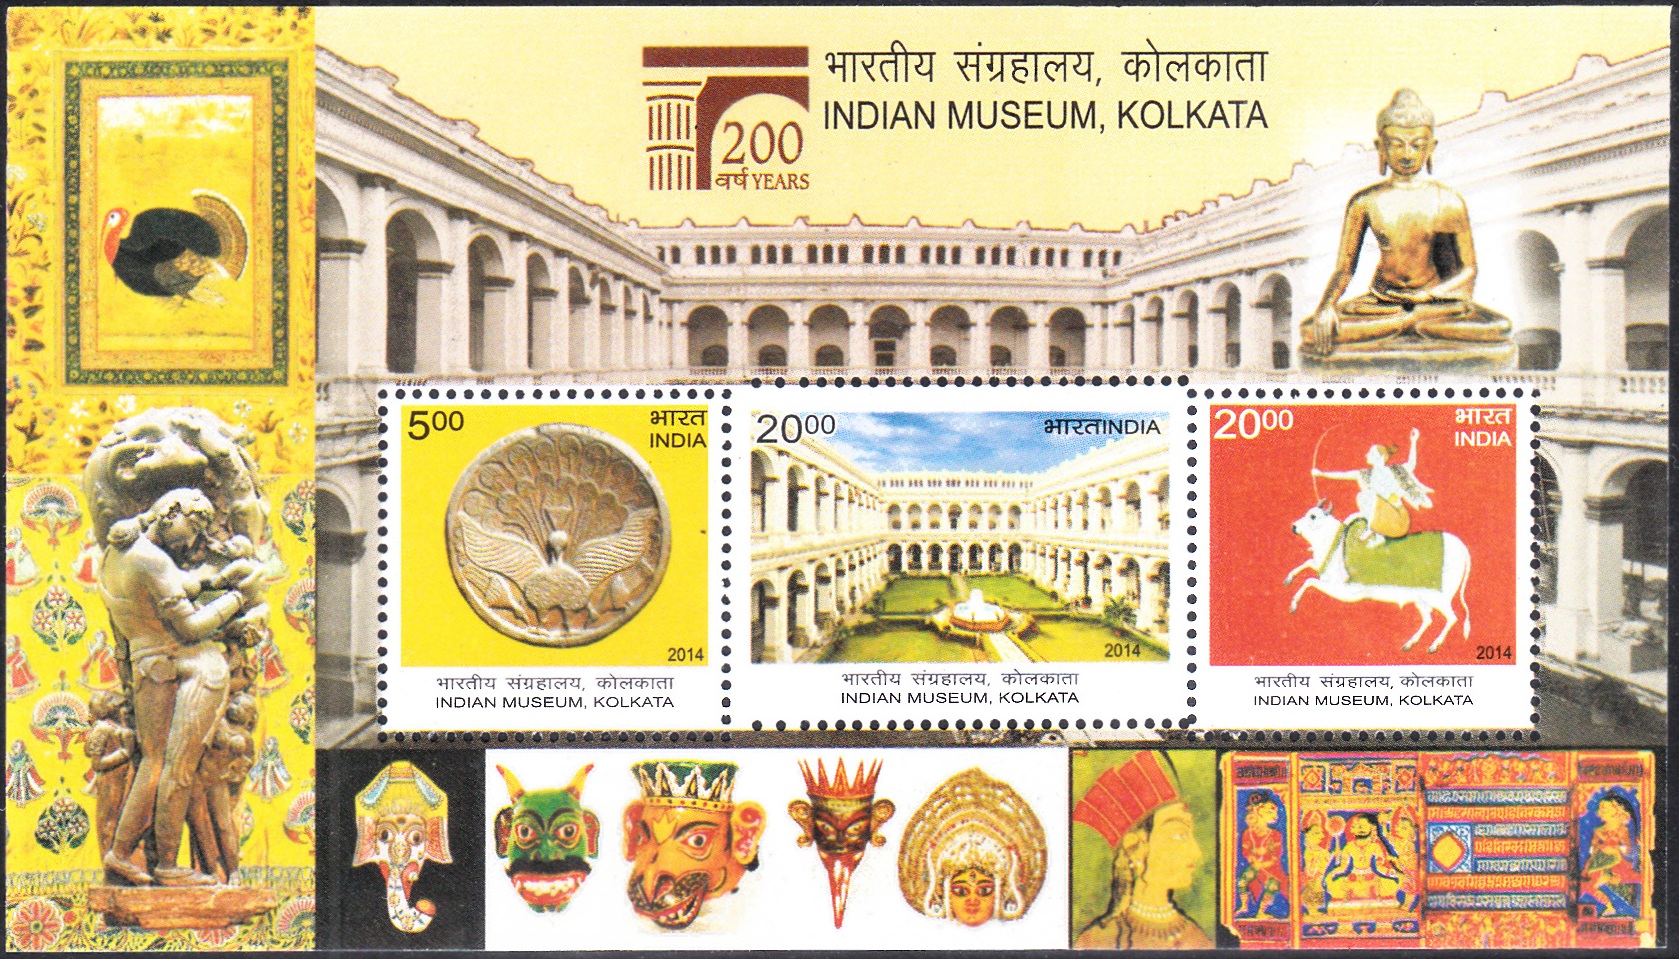  Indian Museum, Kolkata